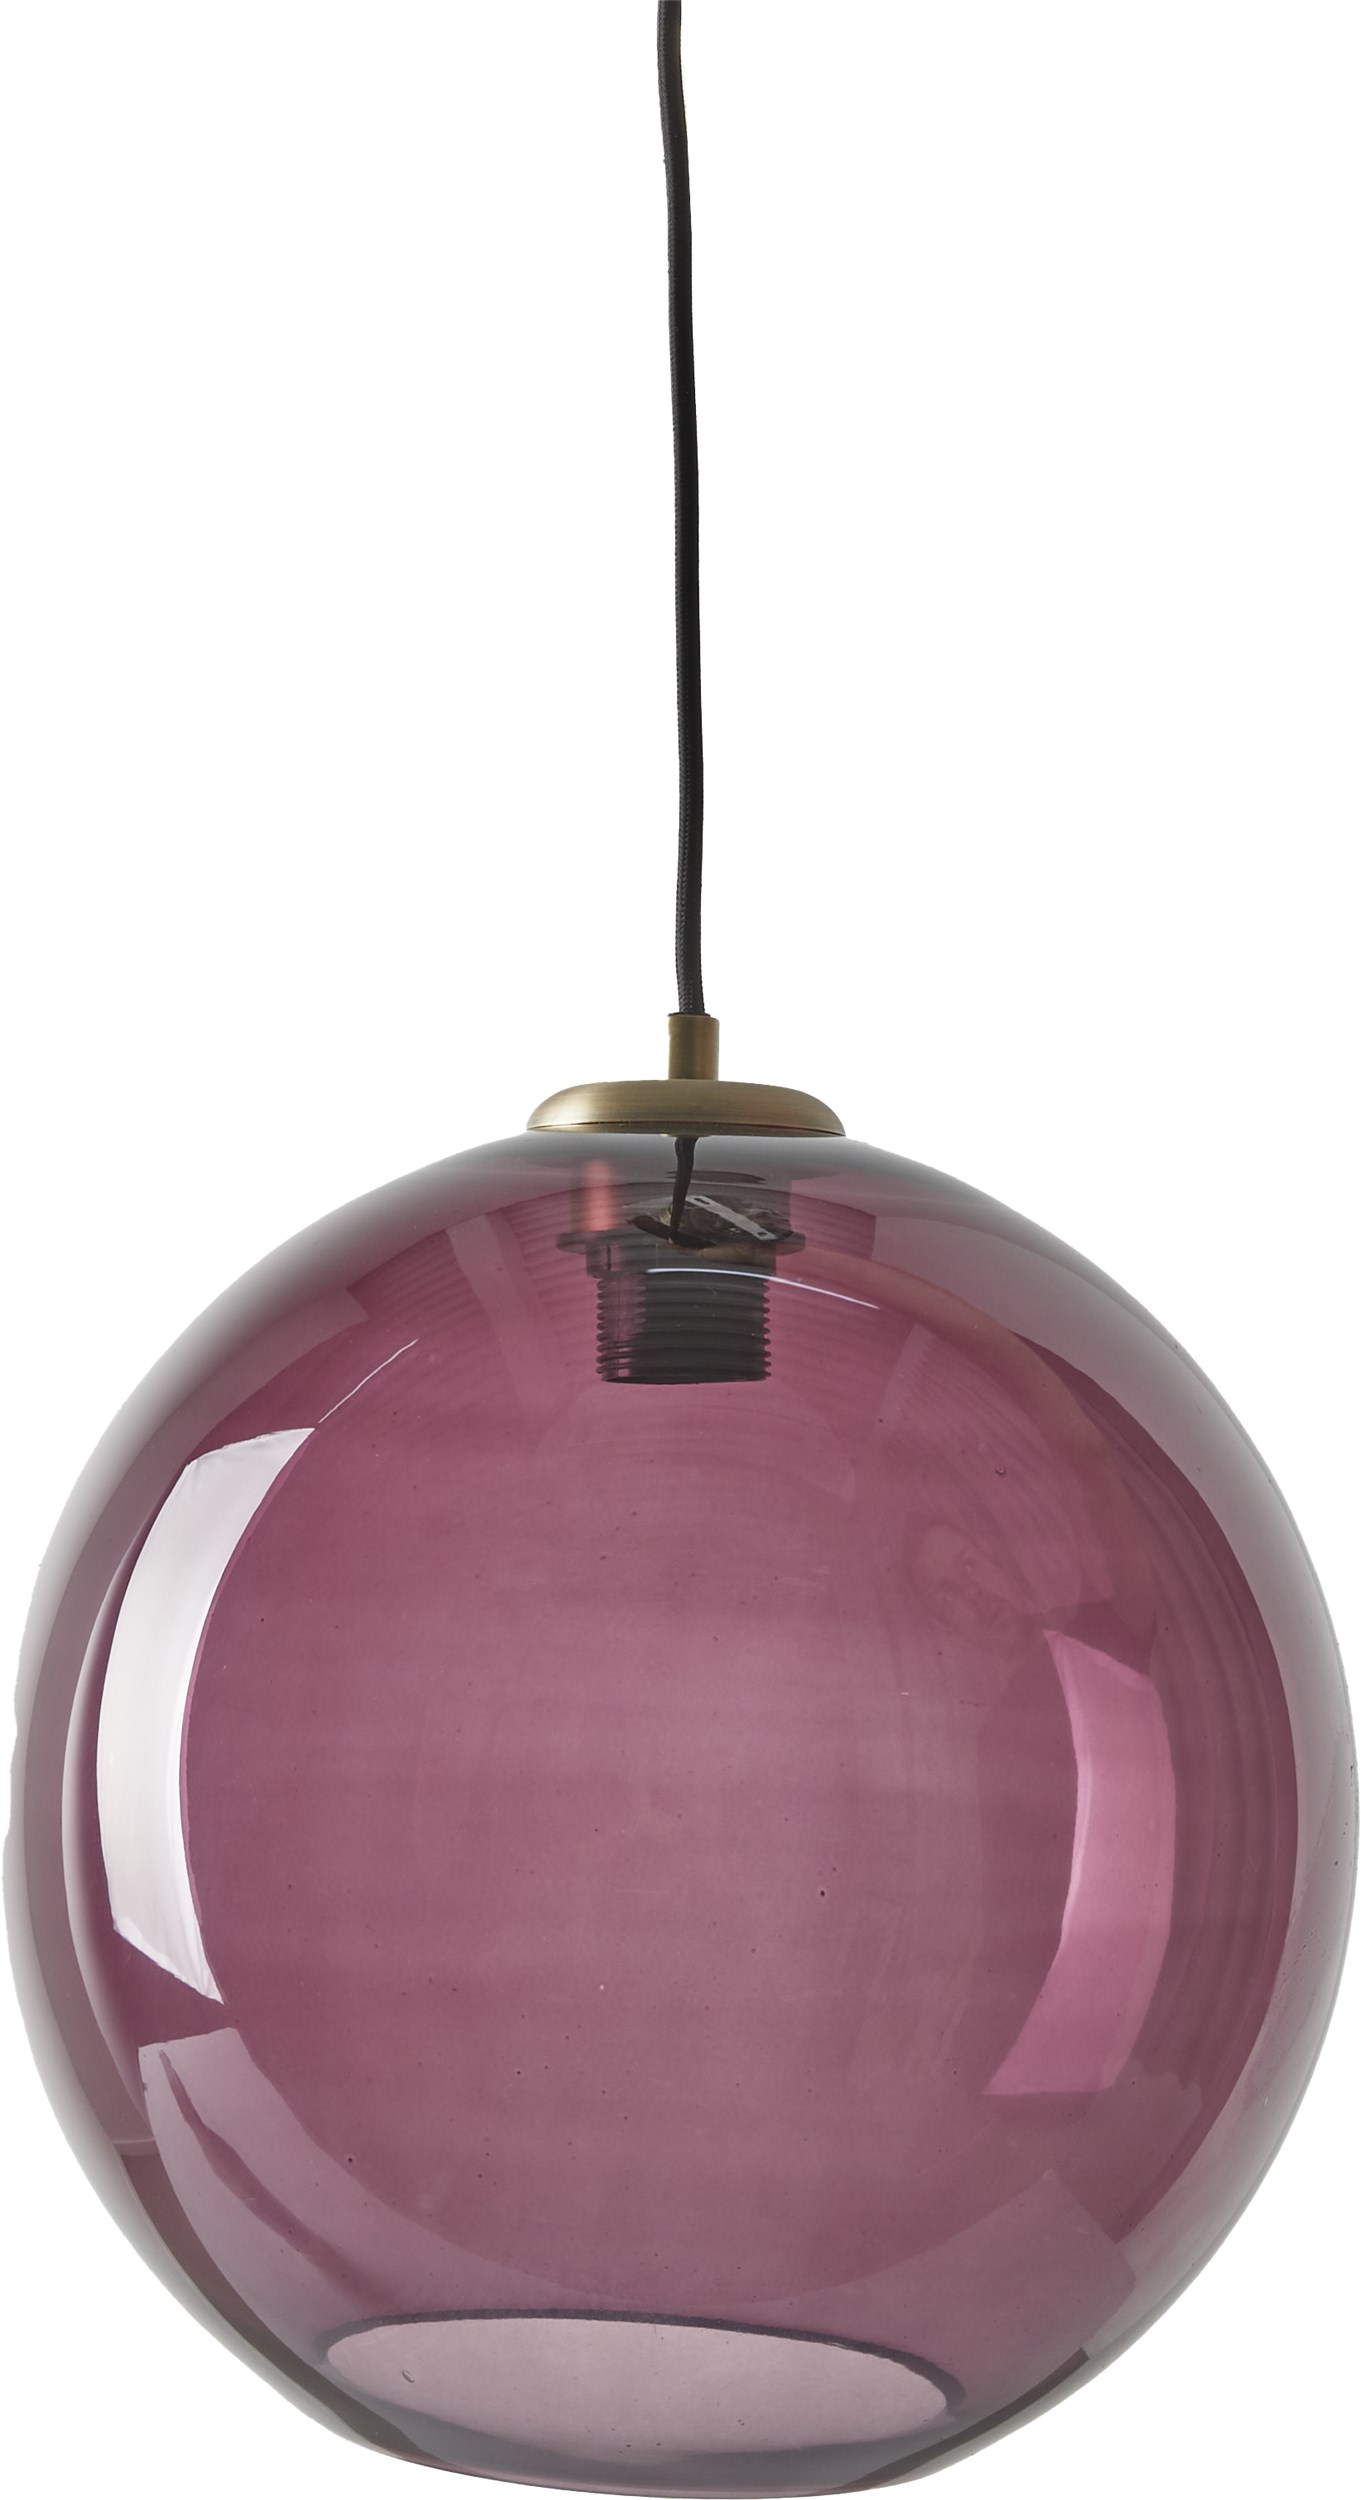 Sona pendellampa 30 cm - Violett glasskärm, topp i mässing och svart textilsladd